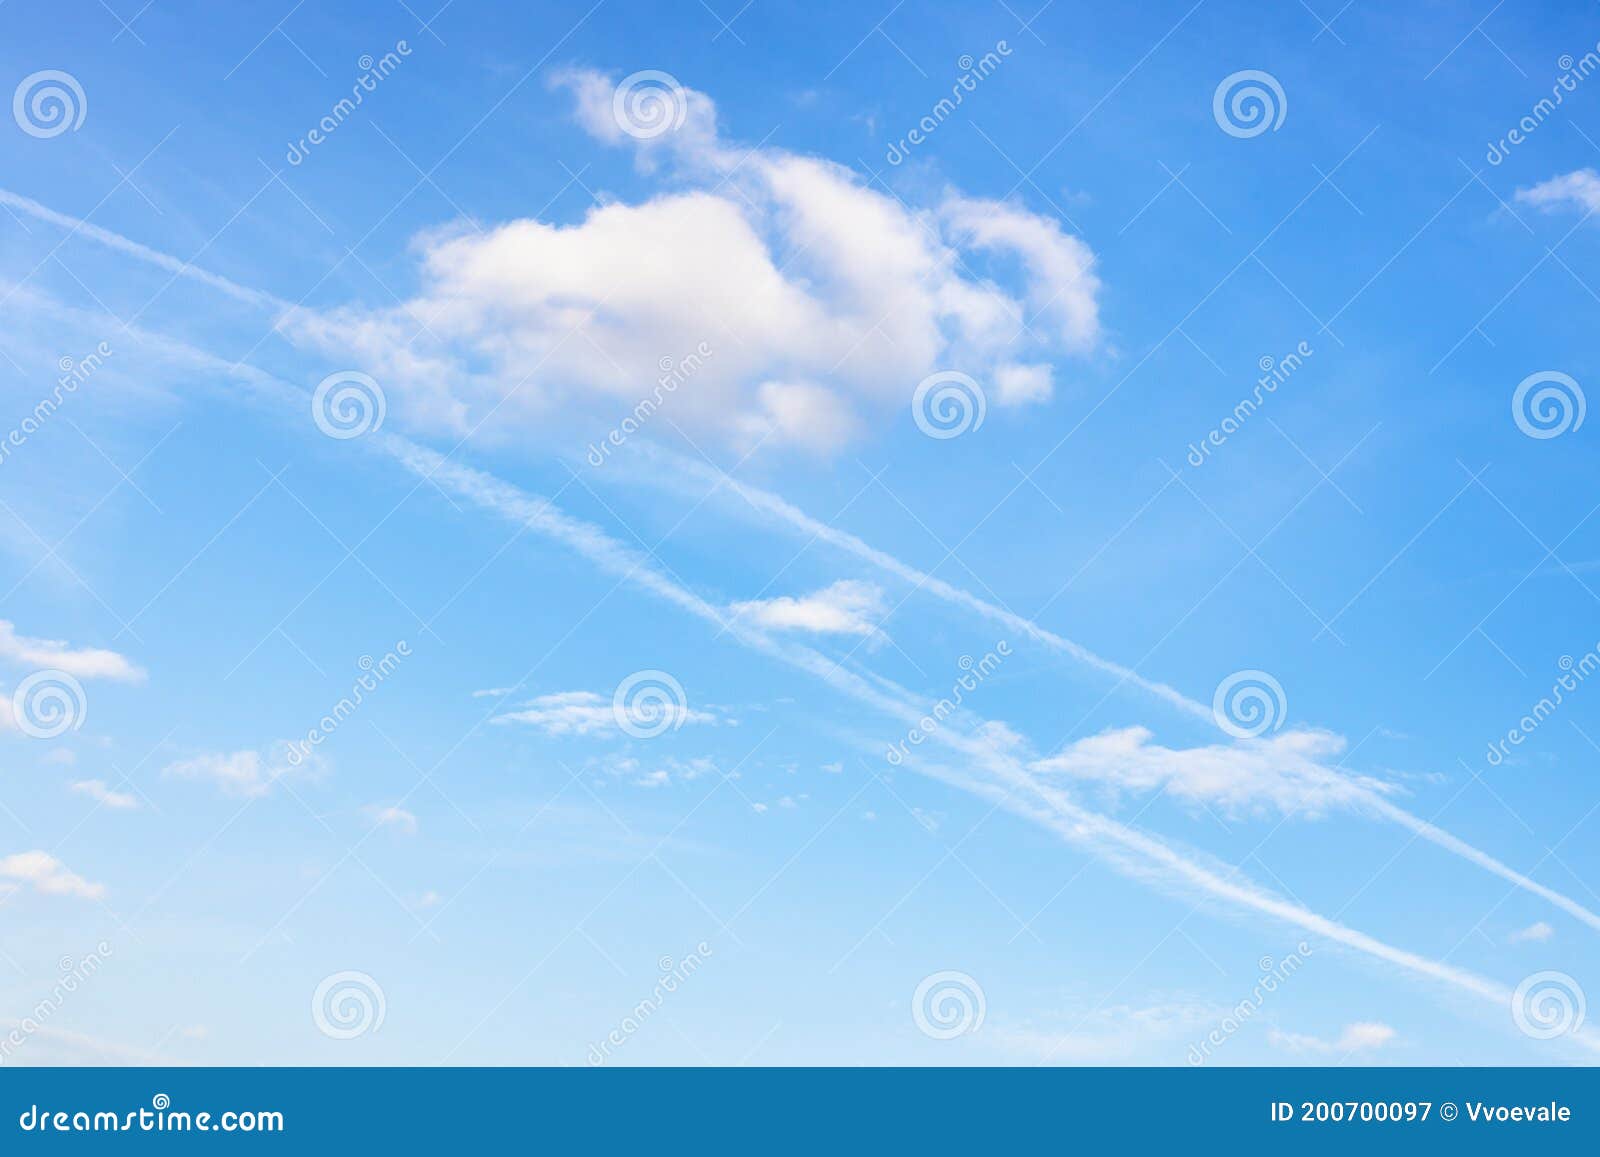 contrail and fluffy cumuli clouds in blue sky